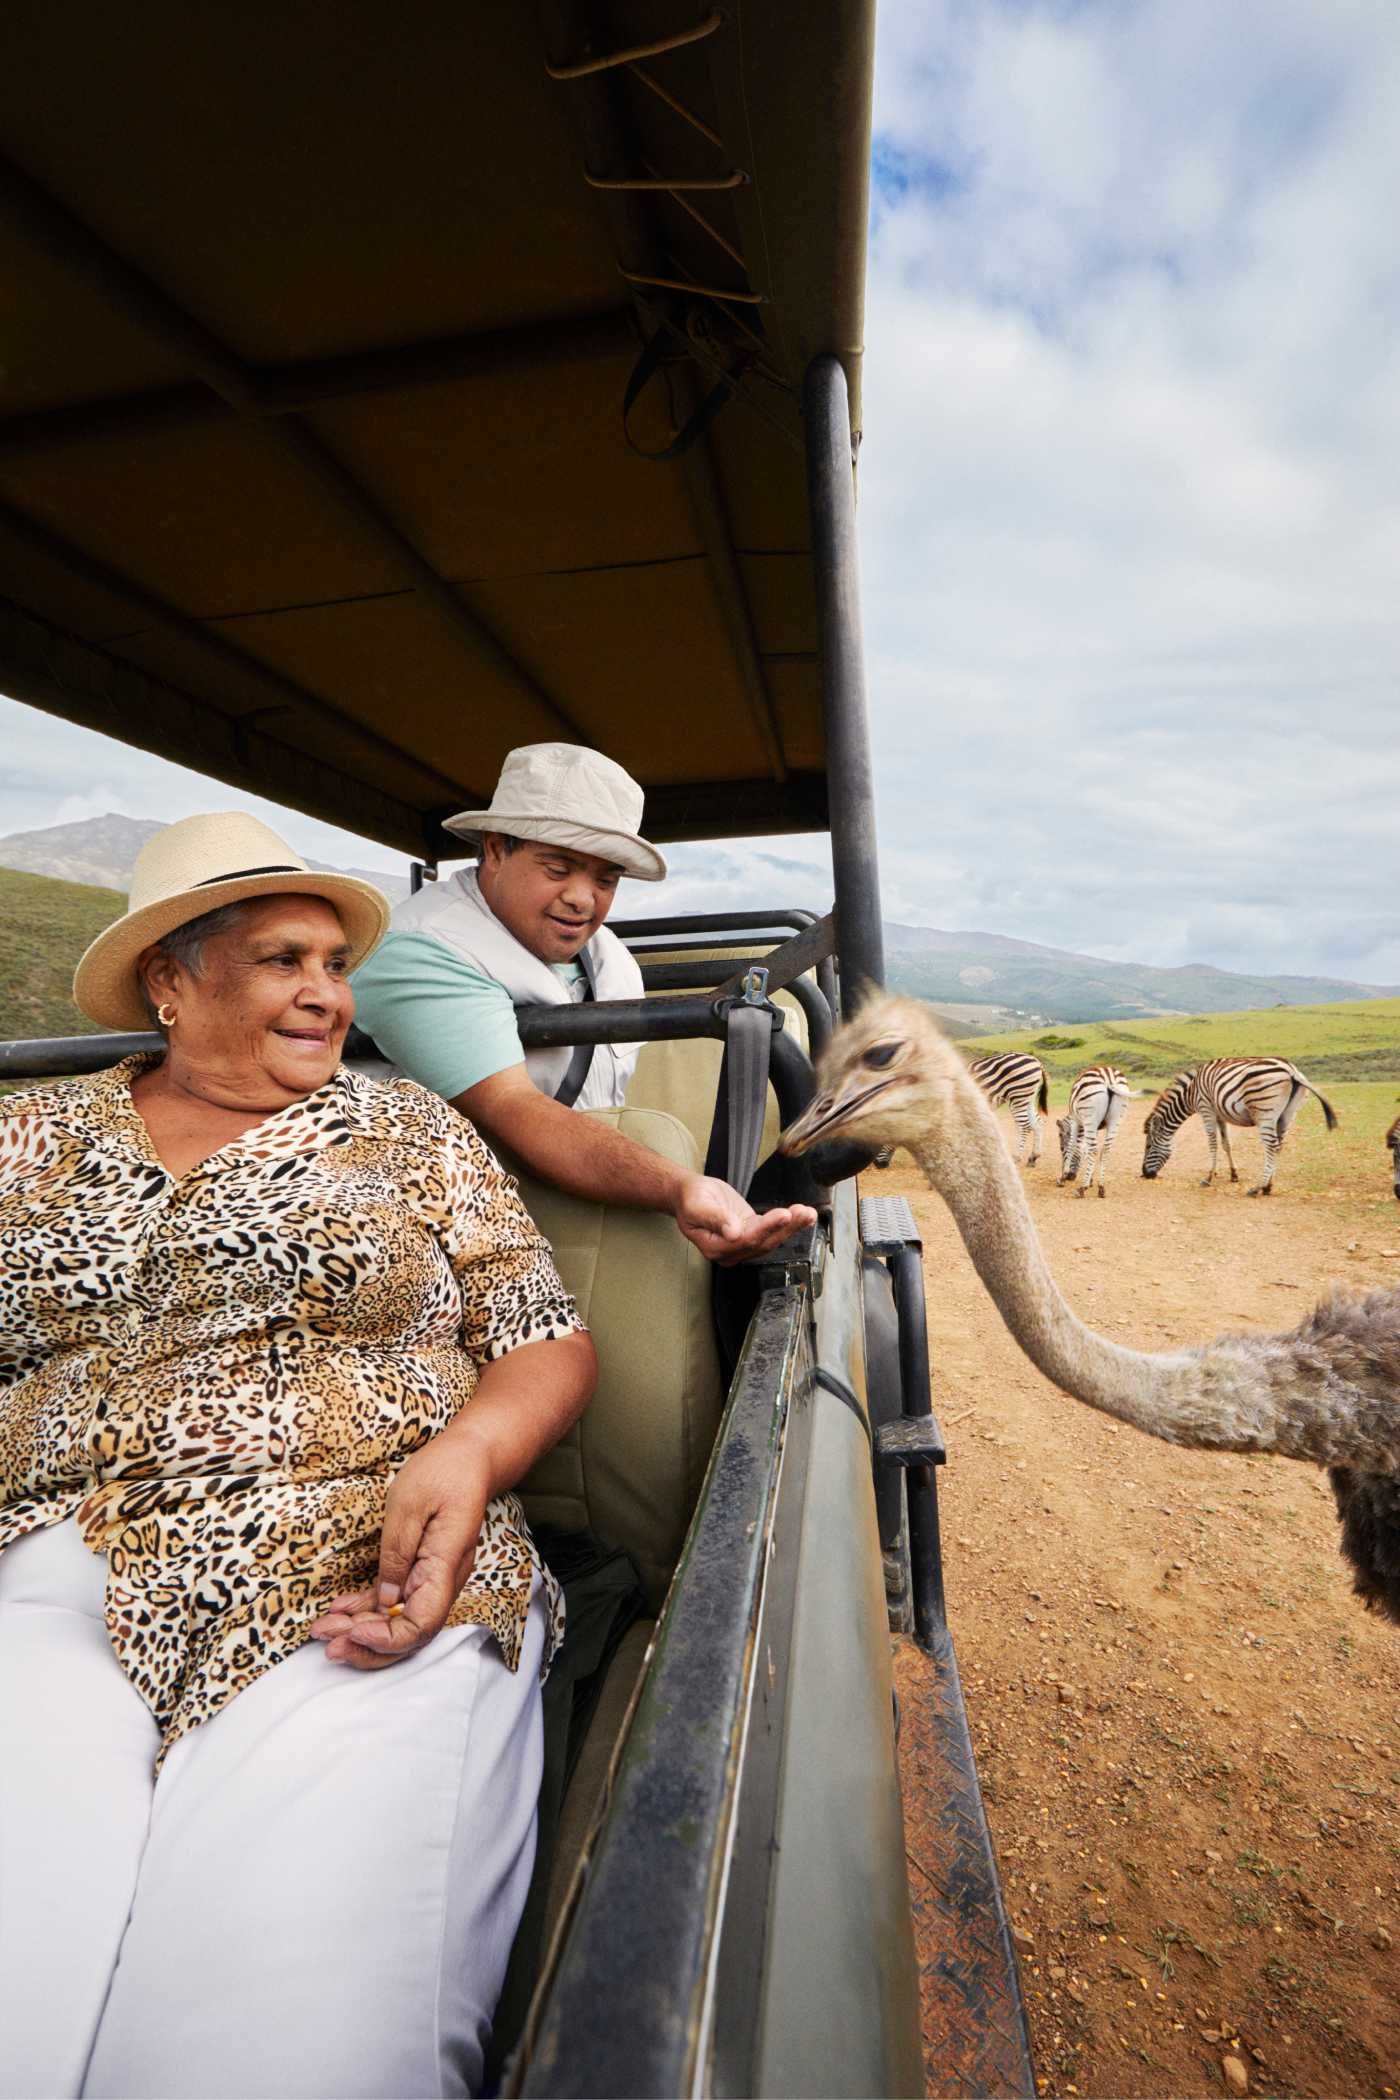 チーターか他の「ビッグ・ファイブ」と称される猛獣を一目見たいと願いながら、広大な南アフリカの風景を眺める母と息子